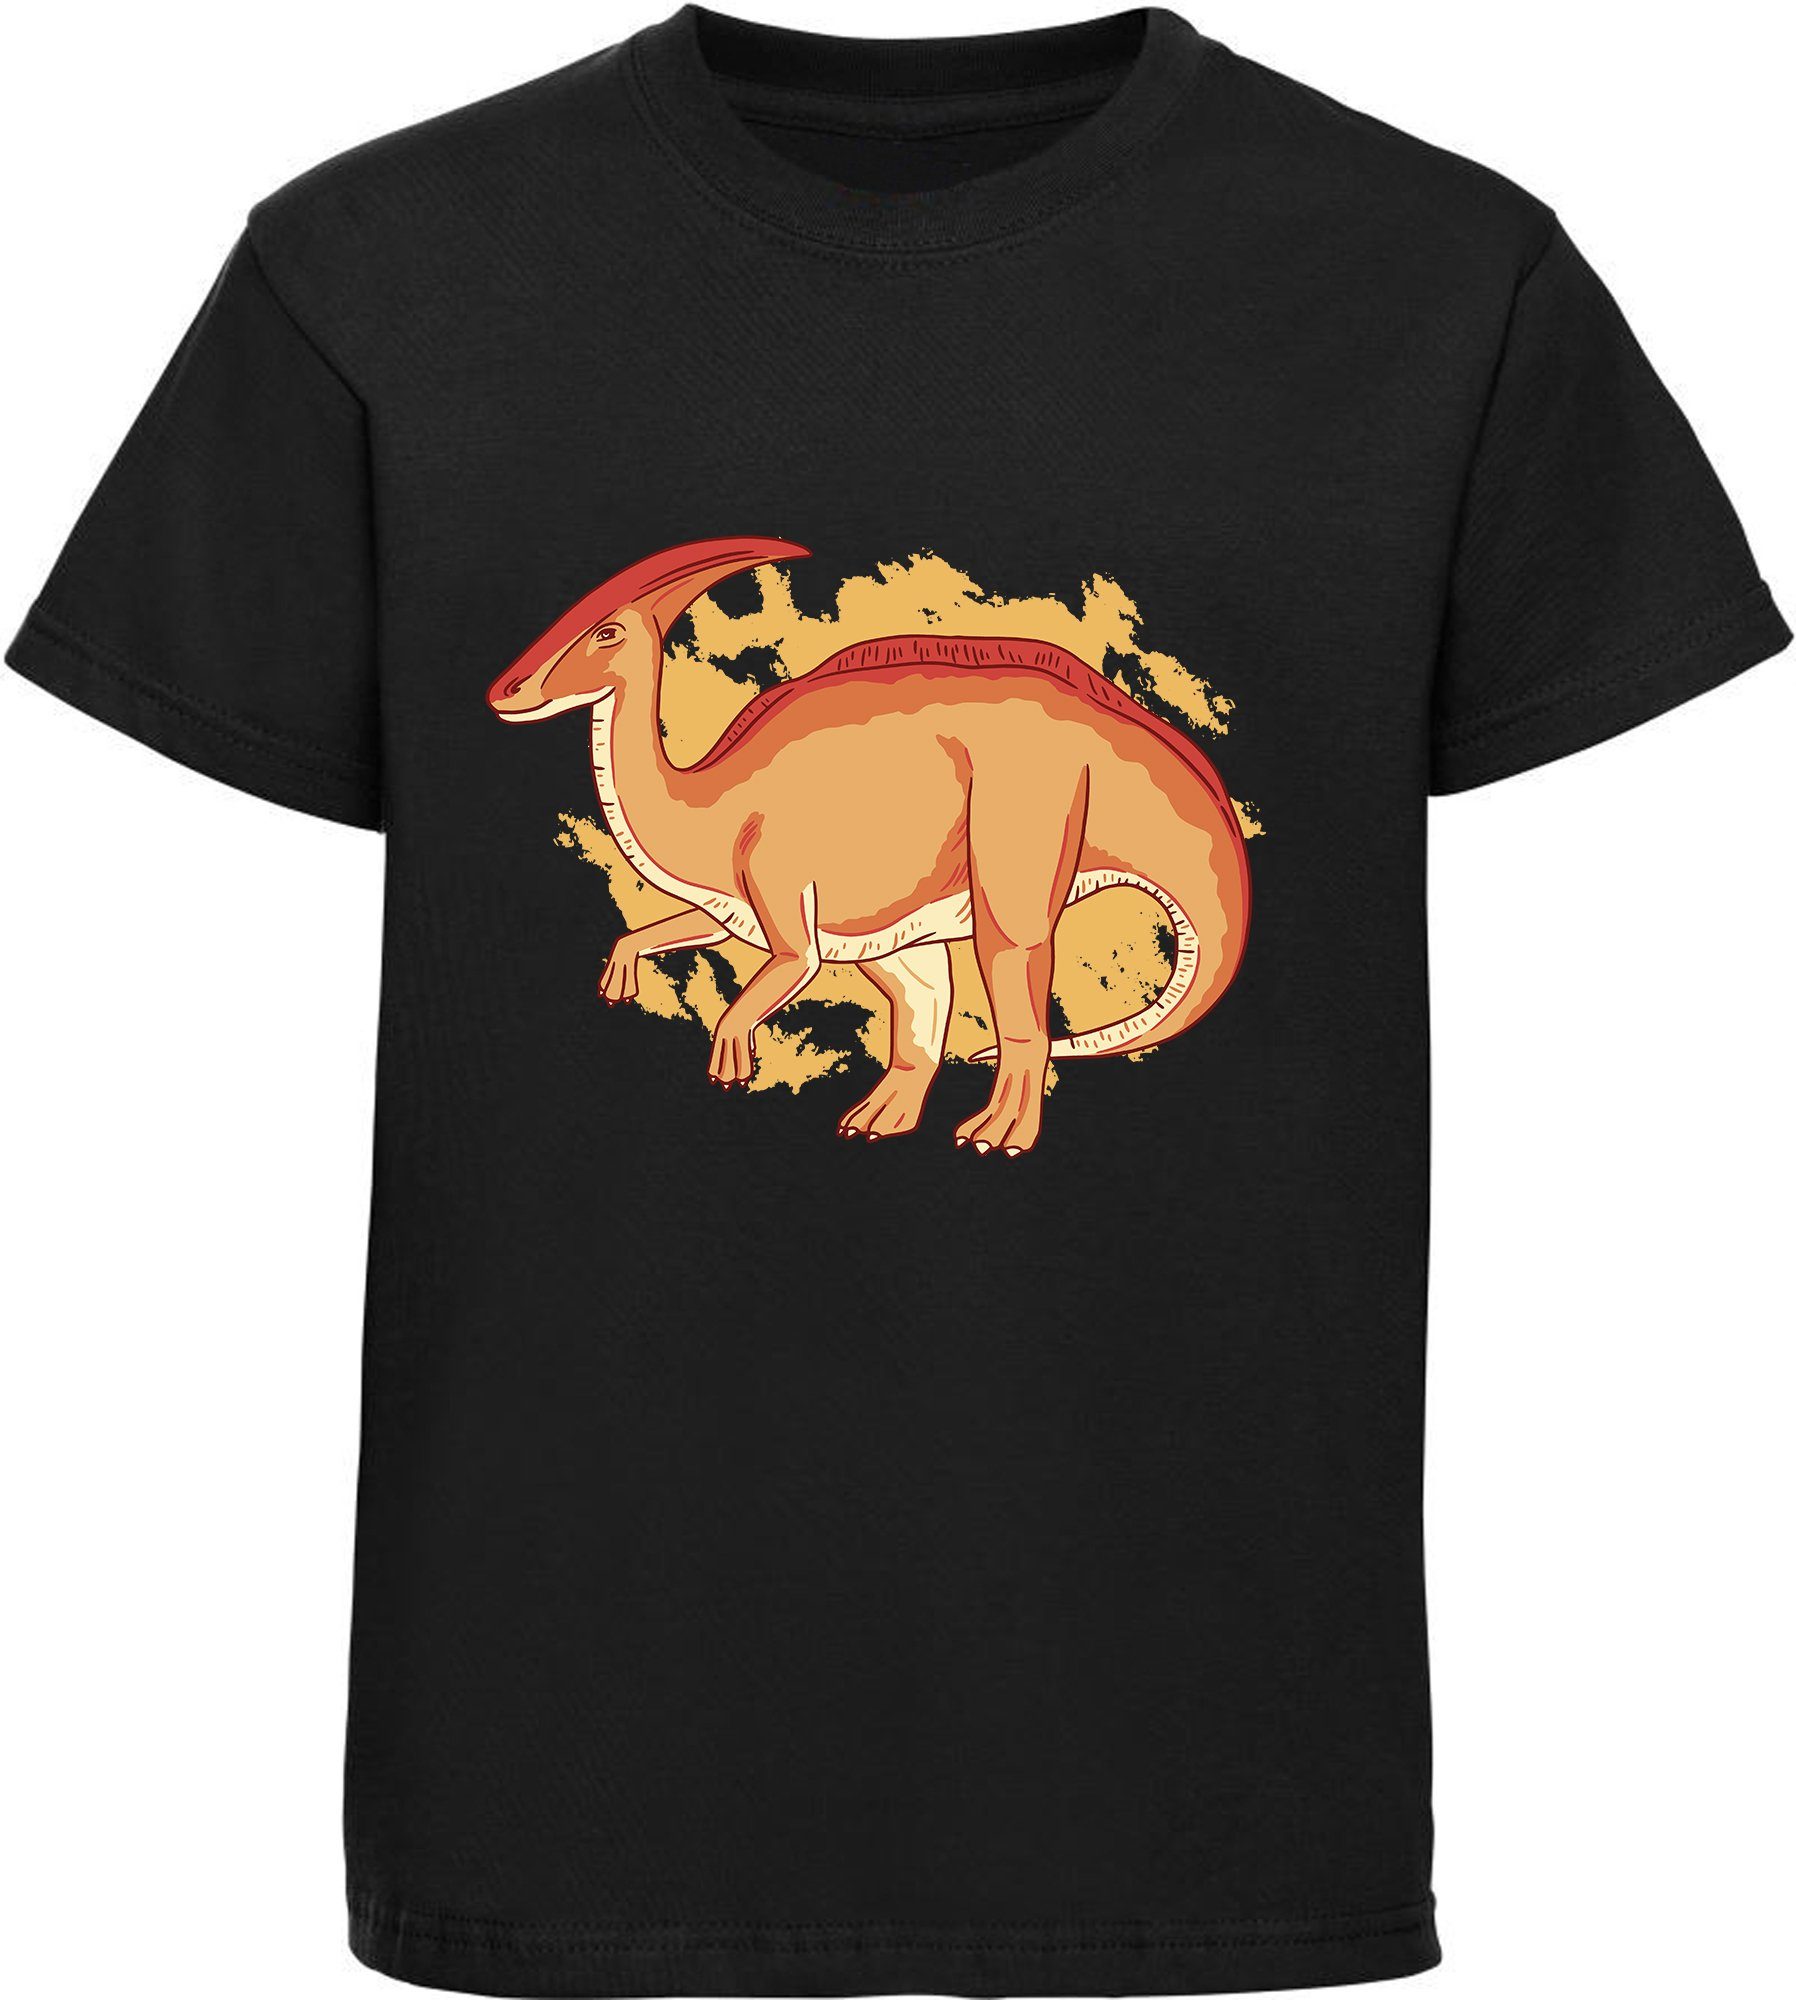 MyDesign24 Print-Shirt bedrucktes Kinder T-Shirt mit Parasaurolophus Baumwollshirt mit Dino, schwarz, weiß, rot, blau, i86